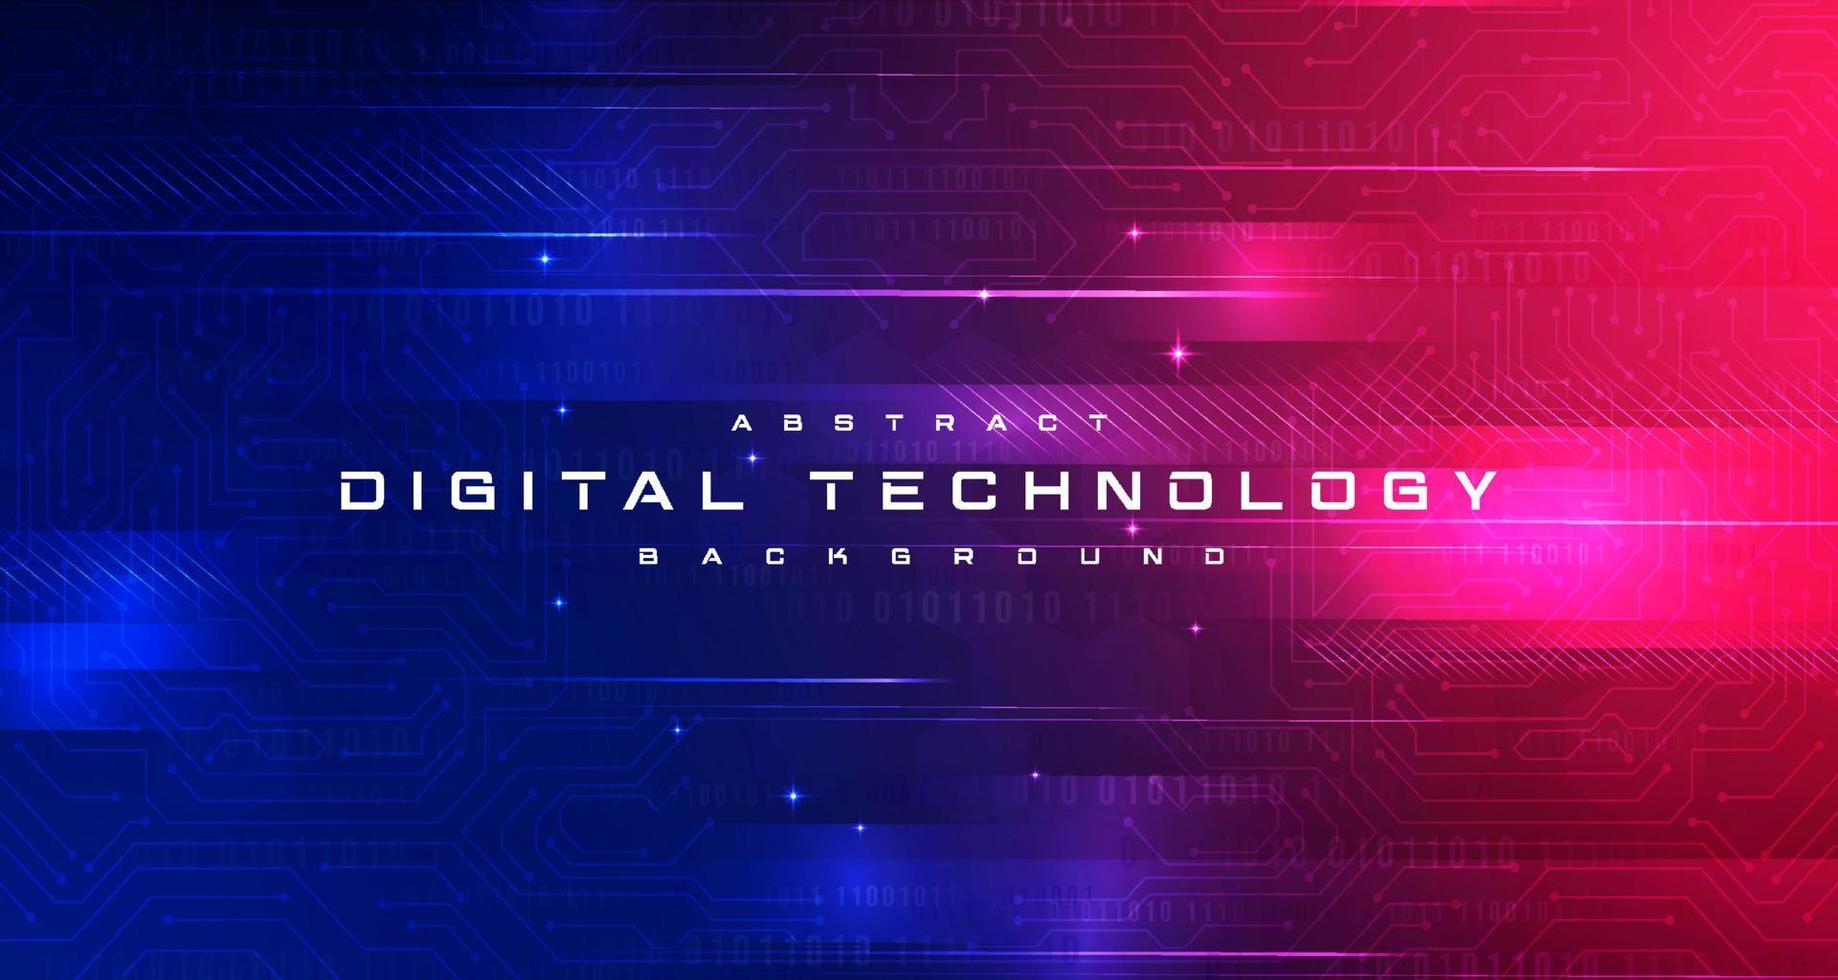 abstrakte digitale technologie futuristische schaltung blauer rosa hintergrund, cyberwissenschaftstechnologie, innovative kommunikationszukunft, ai große daten, internetnetzwerkverbindung, wolkenhi-tech-illustrationsvektor vektor